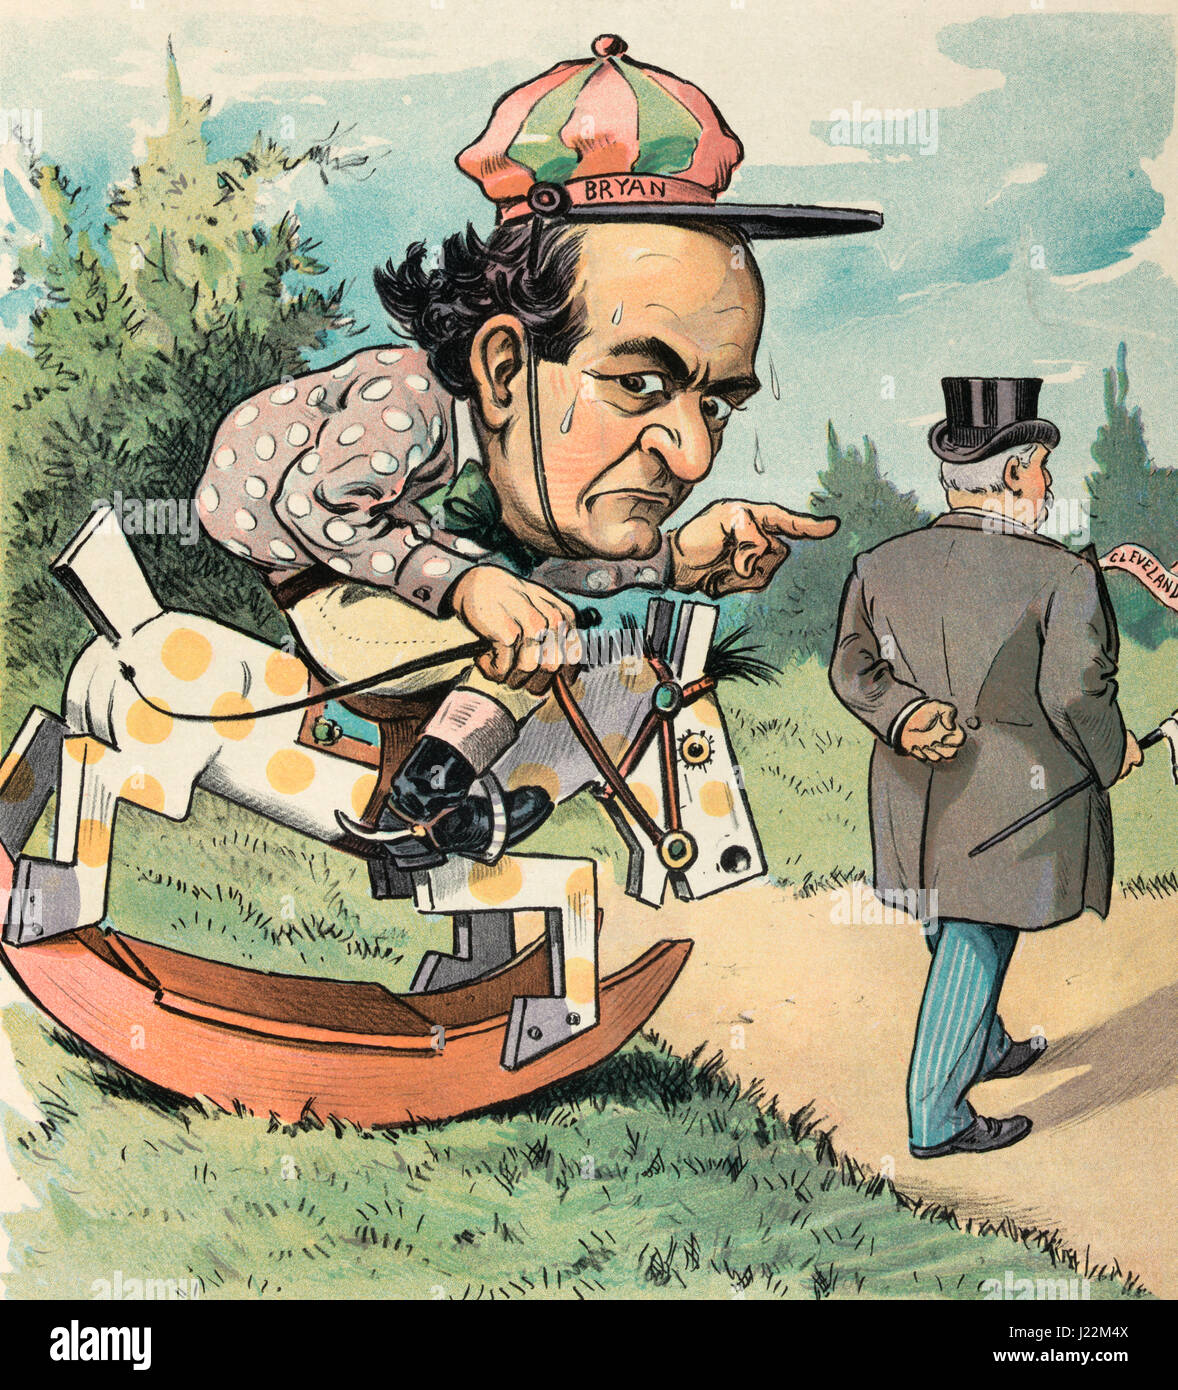 Bryan's hobby - L'illustration montre que William Jennings Bryan un jockey de courses de chevaux 10-12 tente de prendre des Grover Cleveland, qui est en train de renoncer à lui sur la droite. "Je vais courir que l'homme vers le bas, si j'ai à tuer le cheval." caricature politique, 1903 Banque D'Images